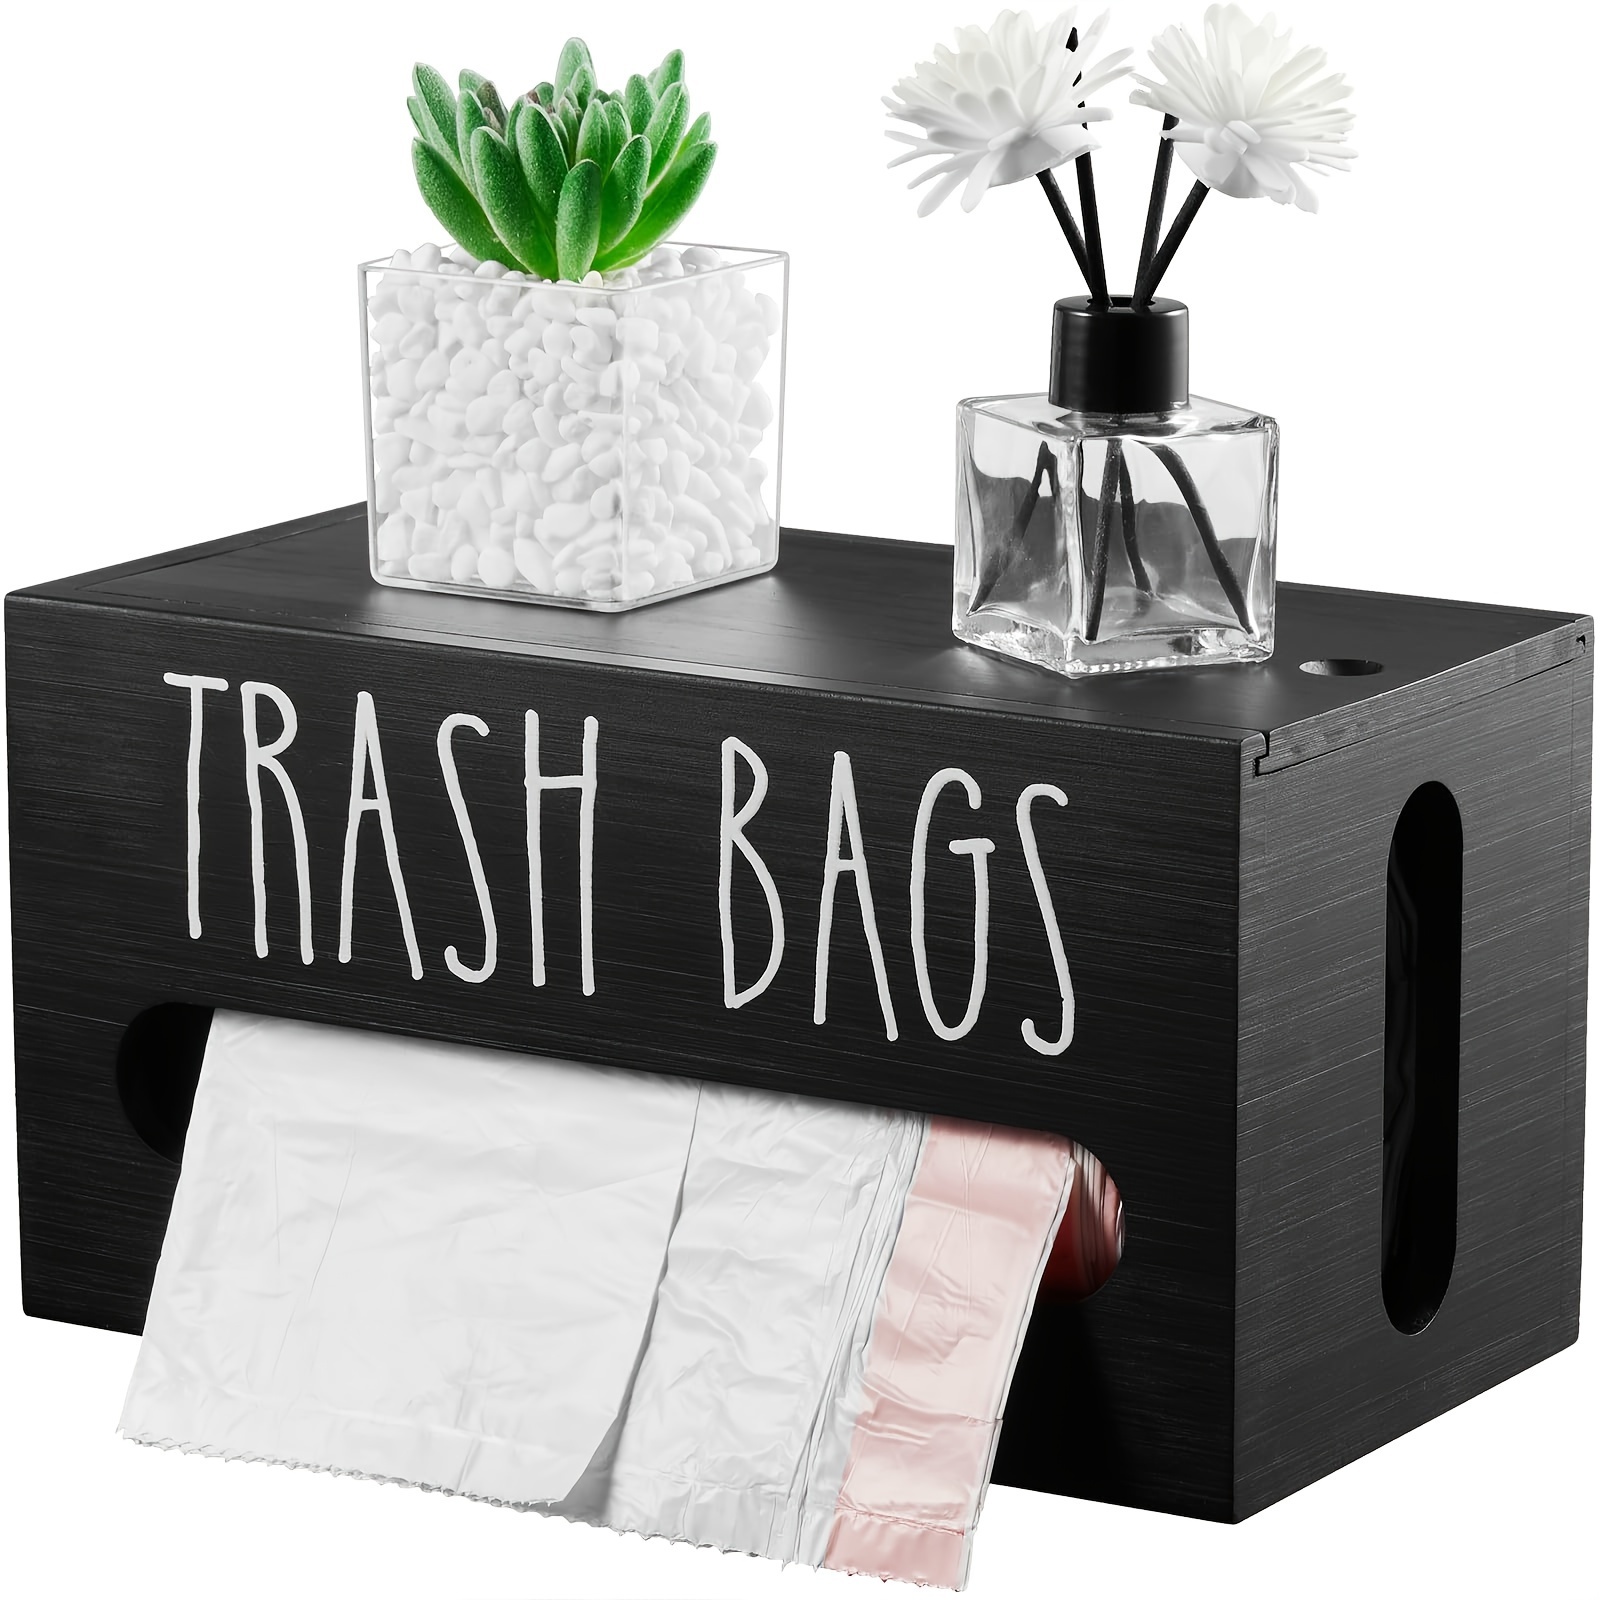 

1pc Trash Bag Dispenser, Trash Bag Storage Organizer, Wall Mount Wooden Trash Bag Roll Holder, Kitchen Accessories, Kitchen Storage Box For Storage And Organization